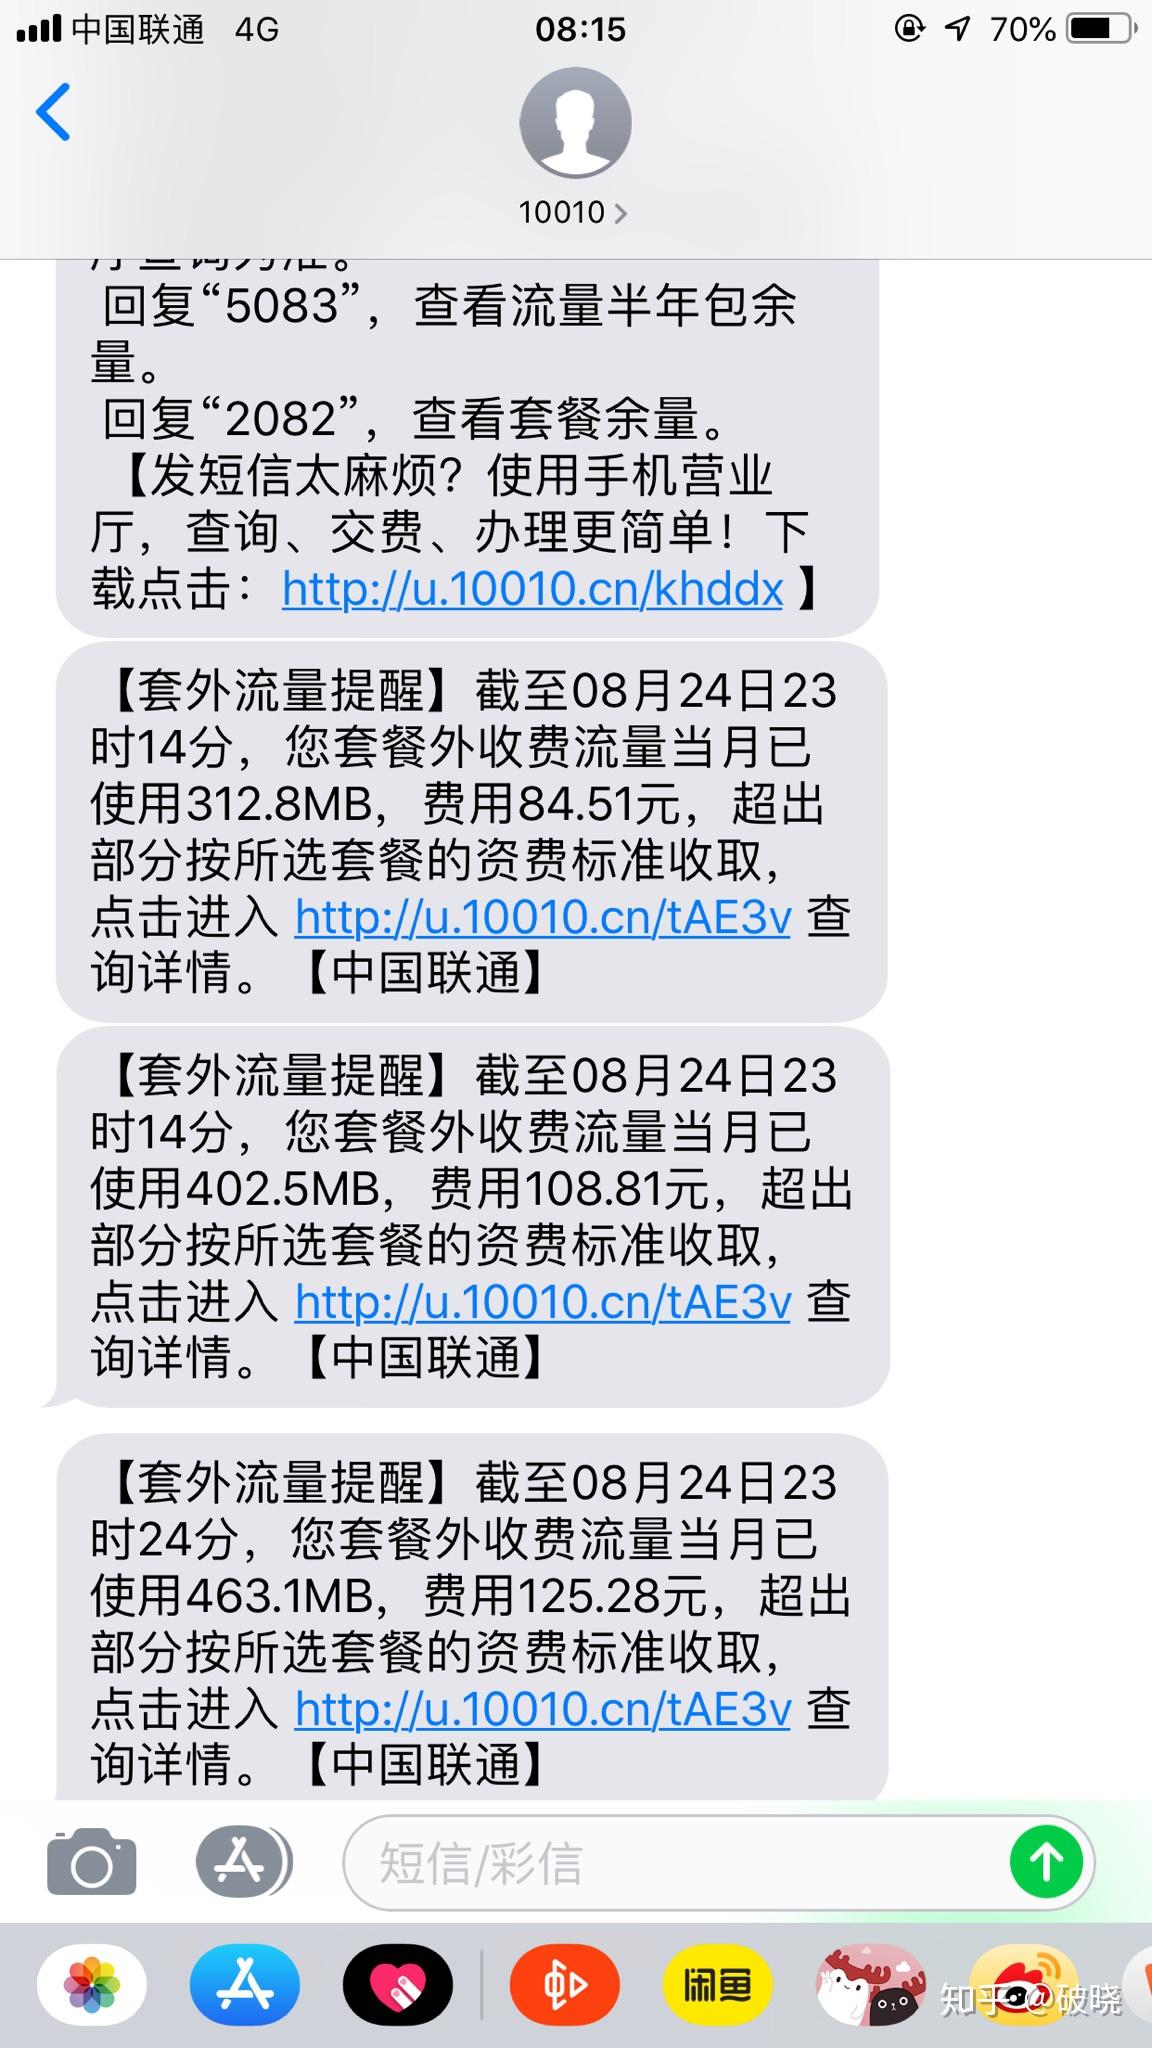 广西移动用户免费领每月1G+600M流量+100条短信 - 羊毛日报